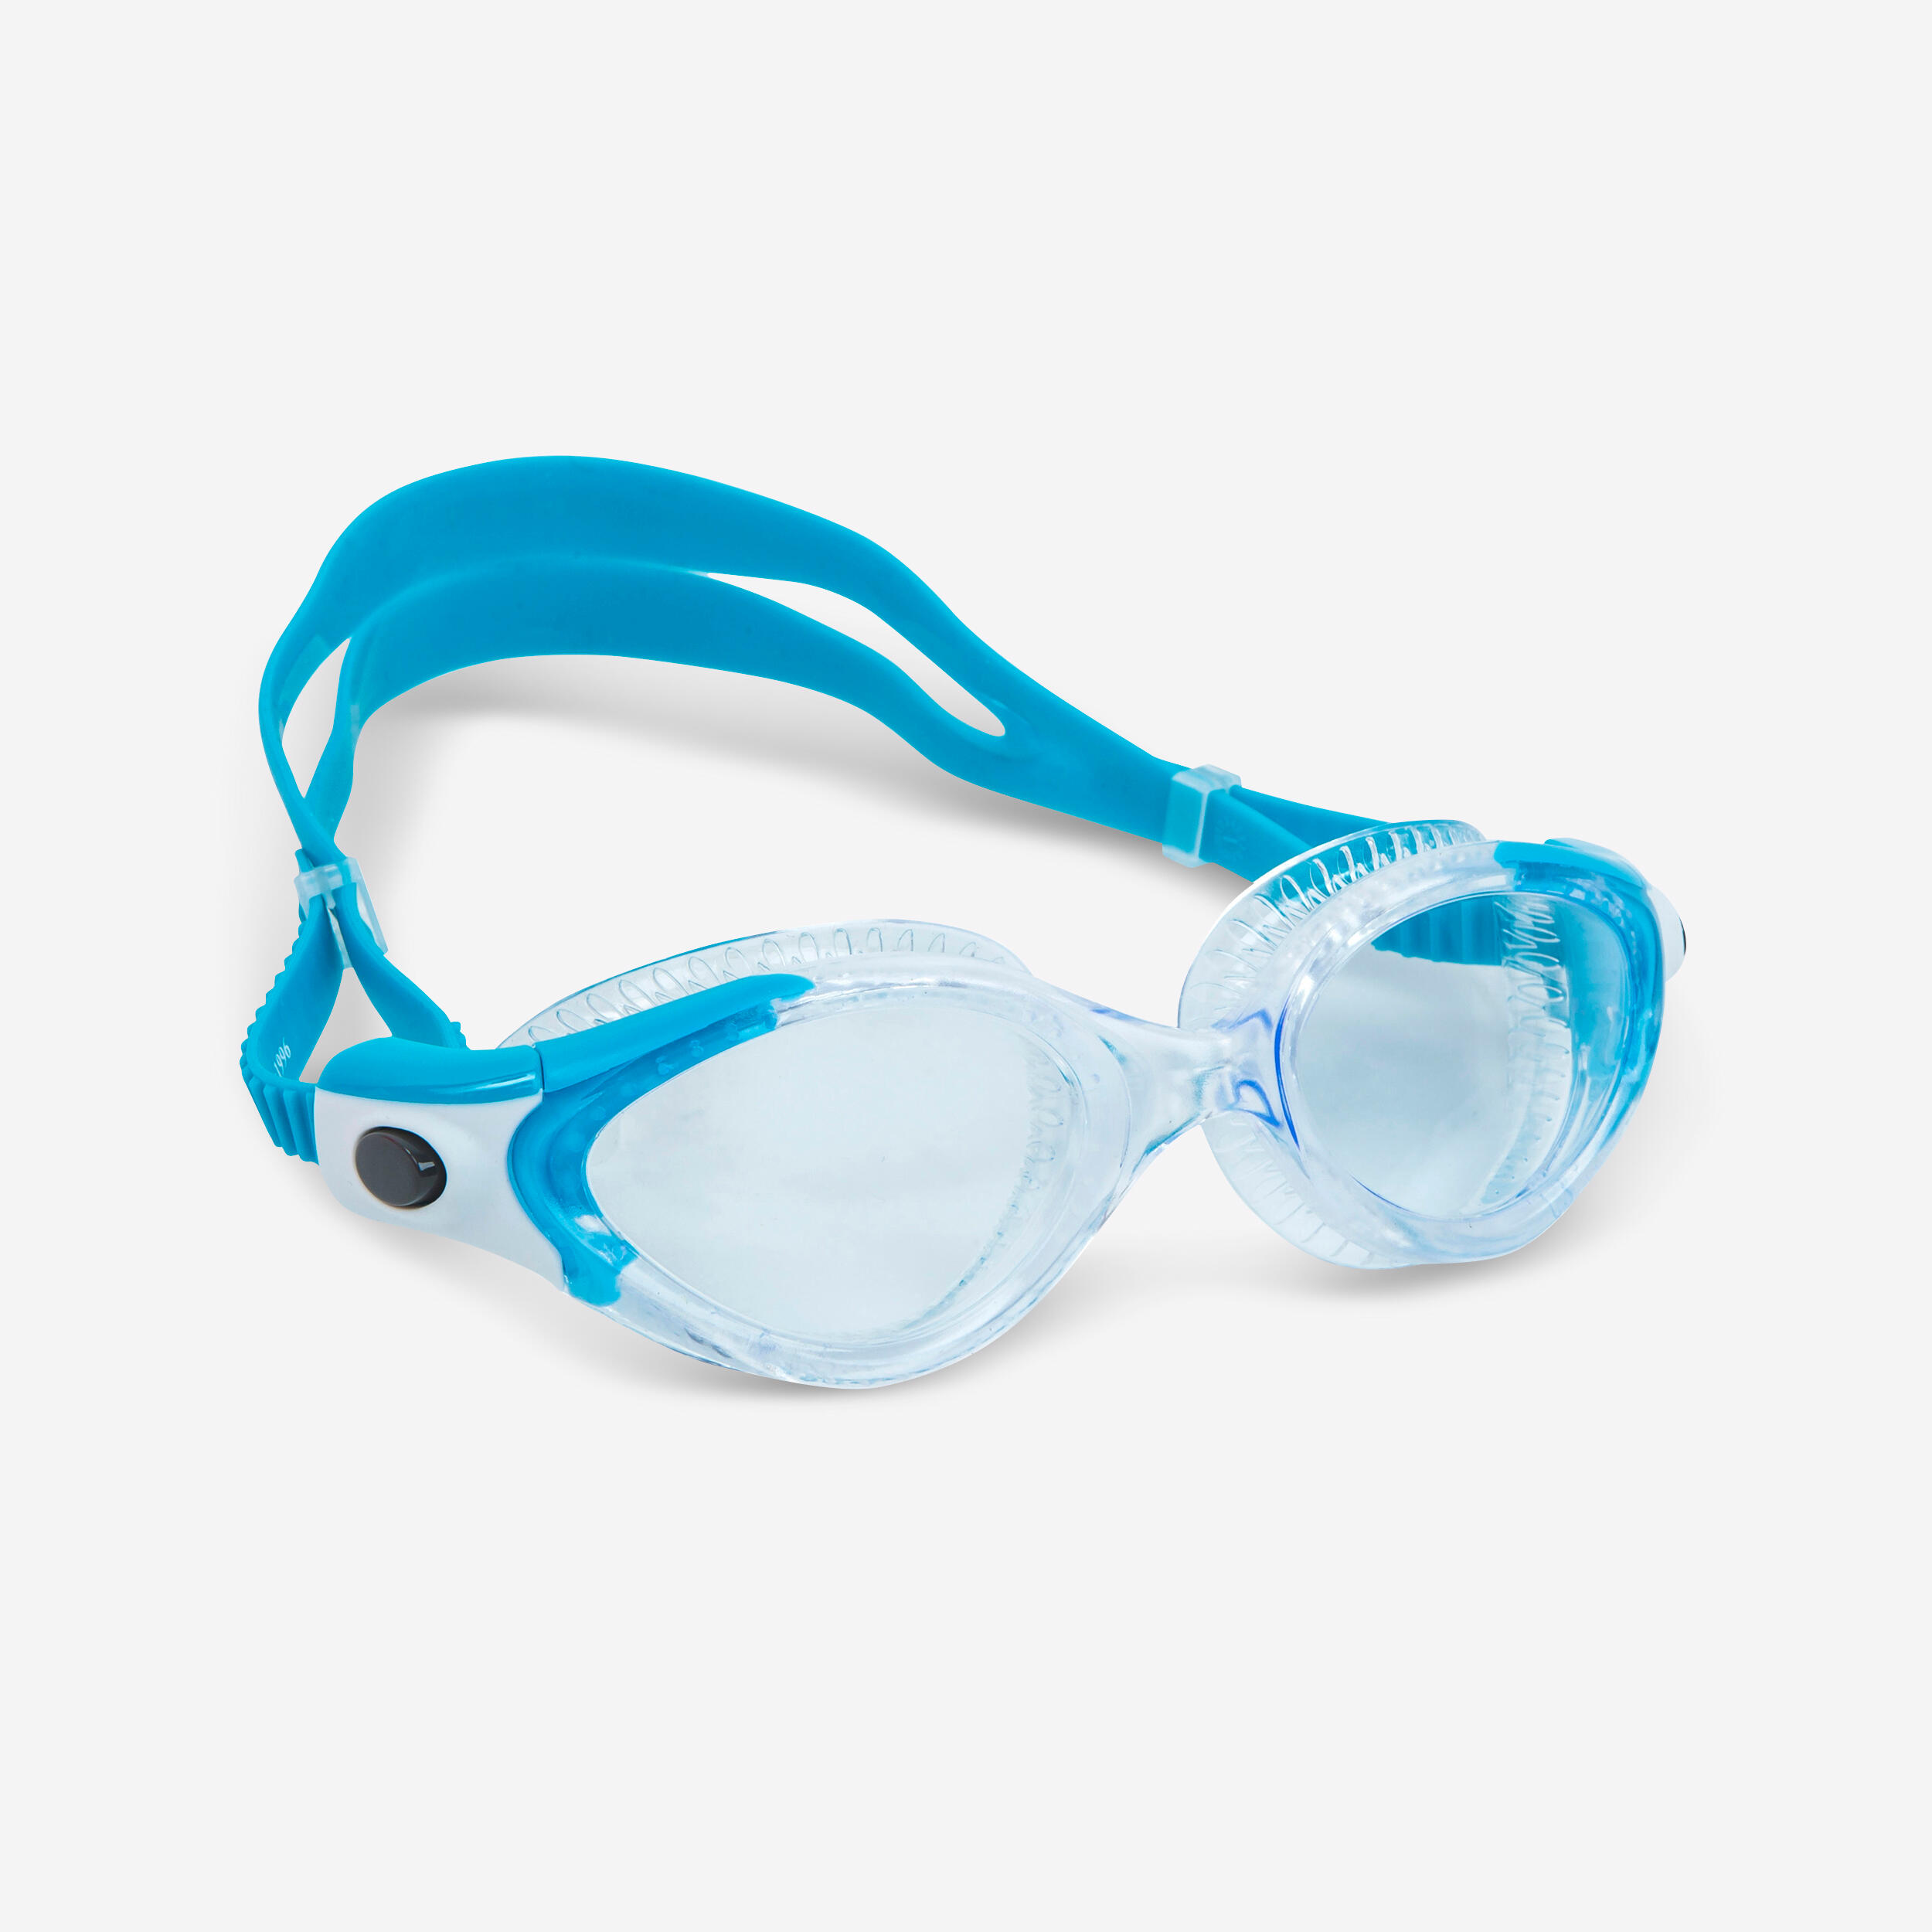 Schwimmbrille Speedo Futura Plus Erwachsene Damen Herren Goggles Taucherbrille 